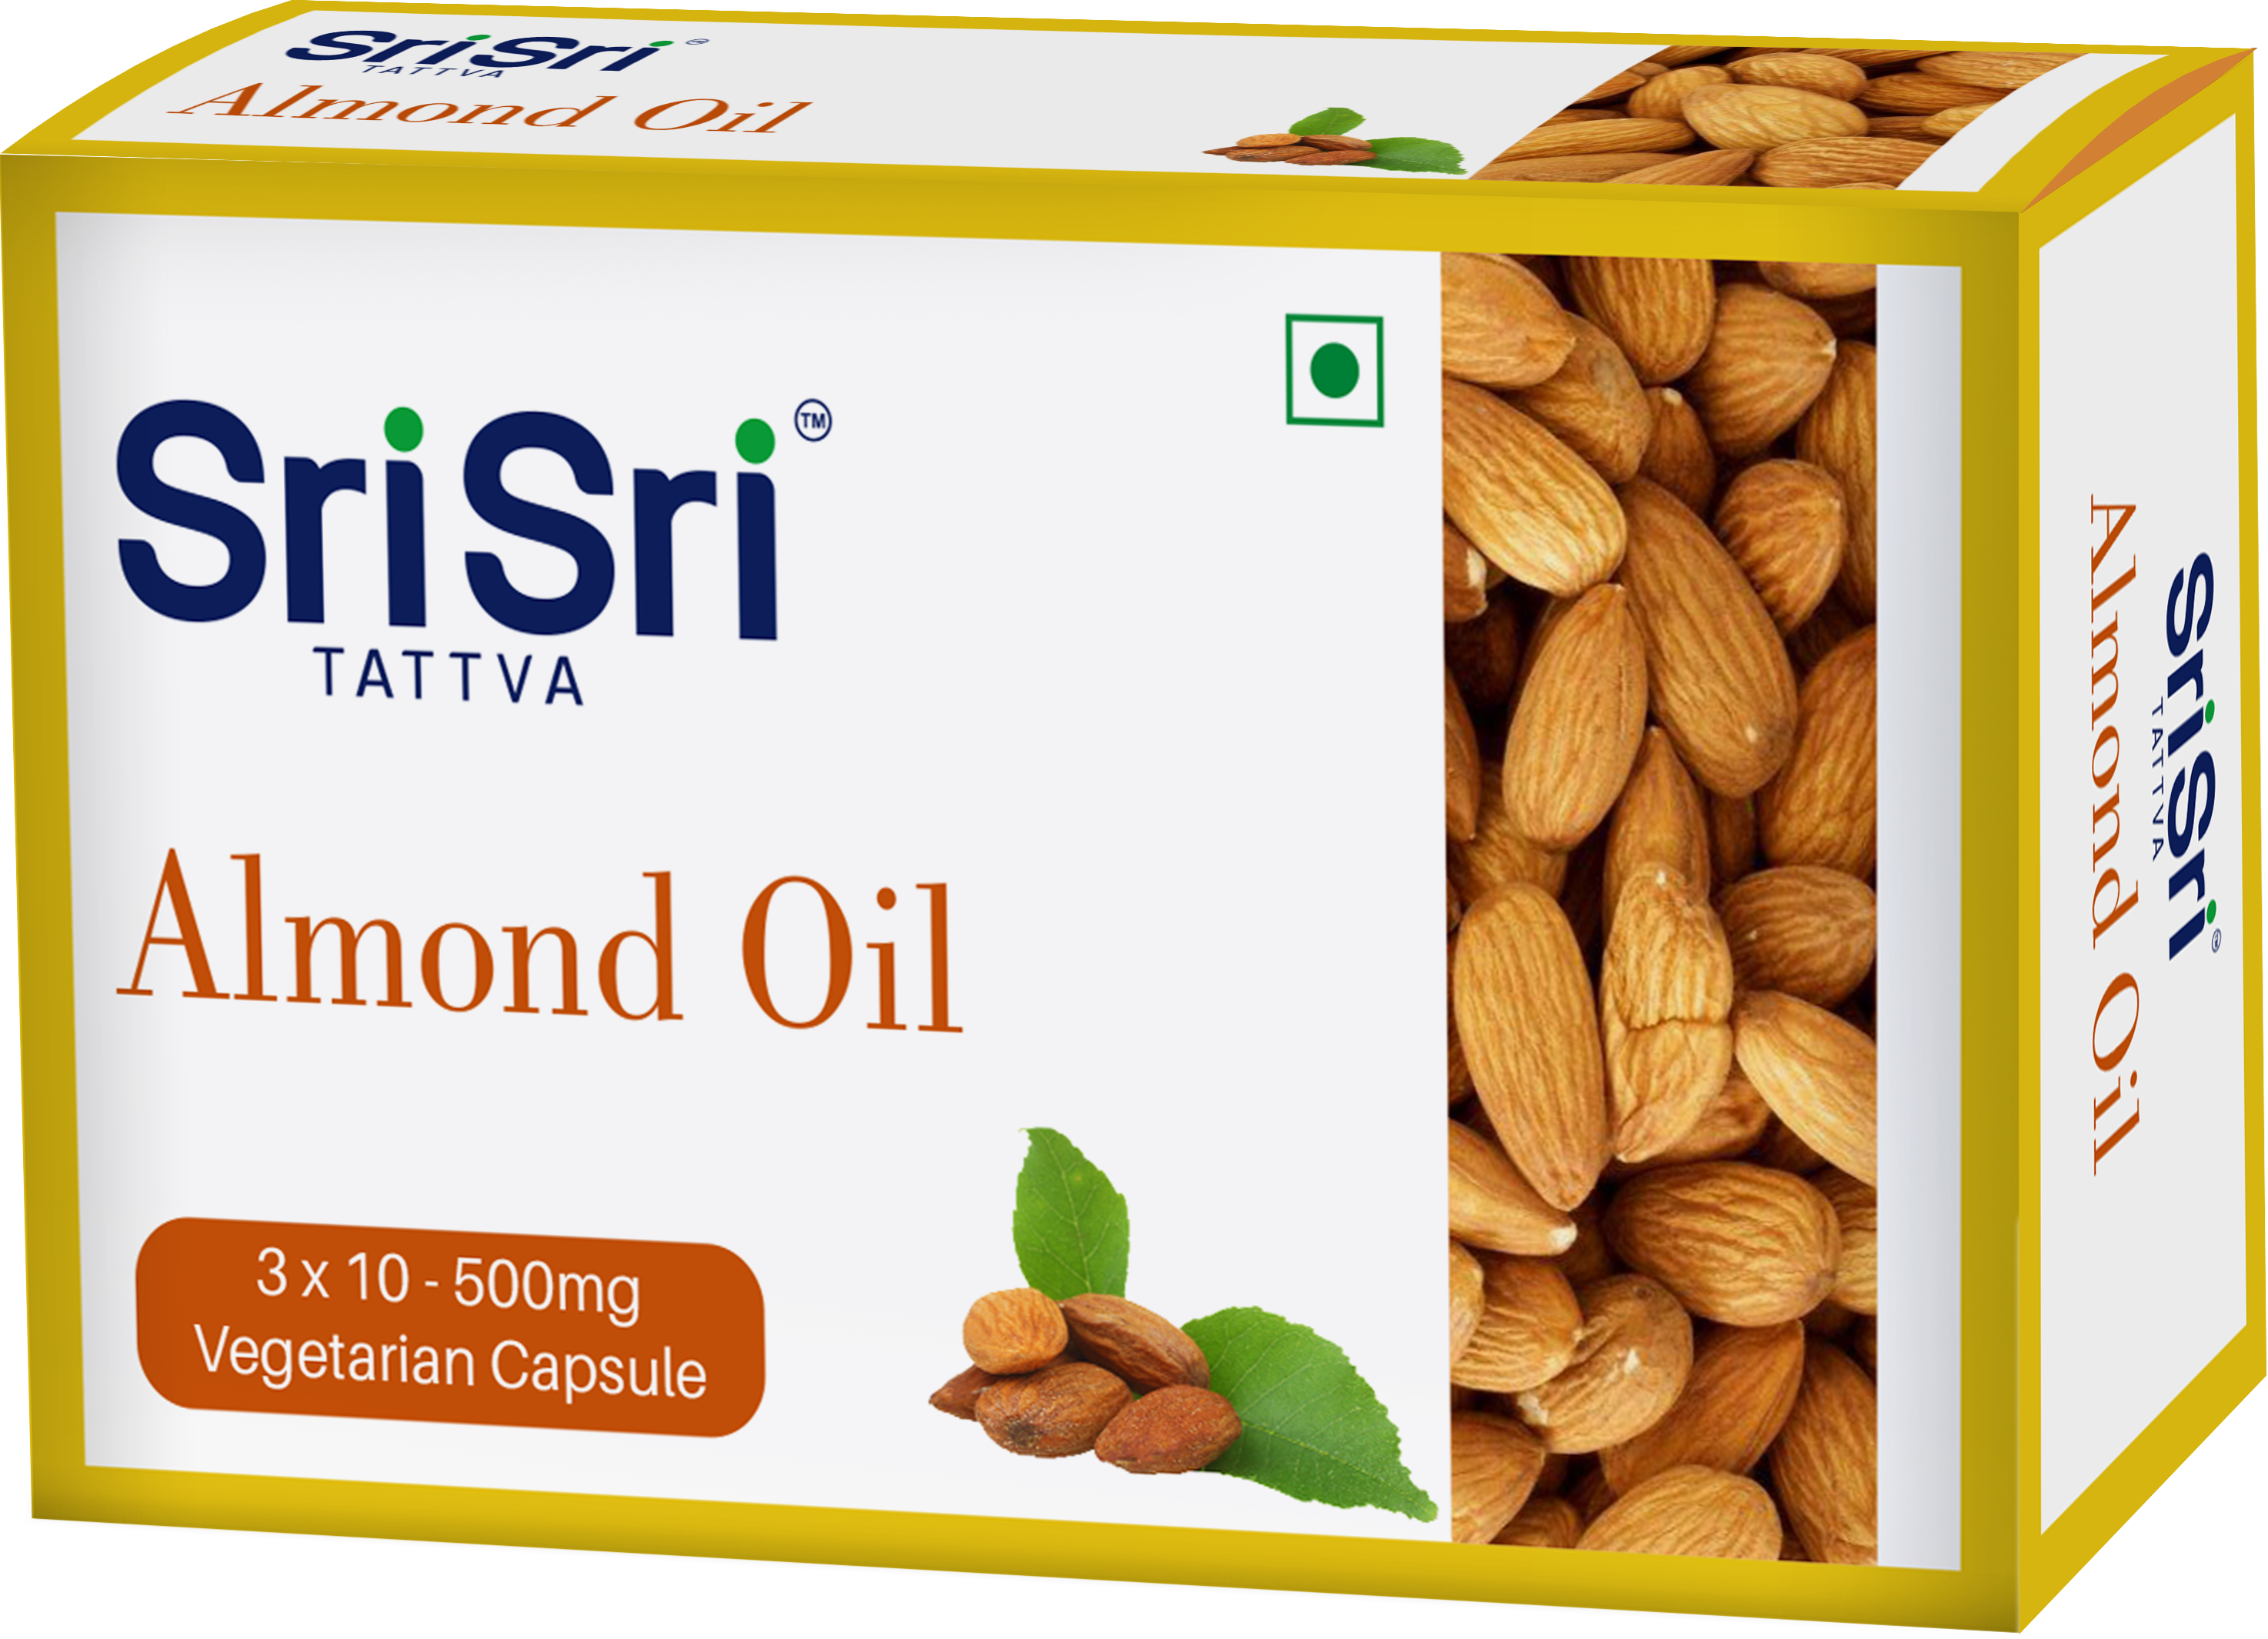 Sri Sri Tattva Almond Oil Veg Capsule